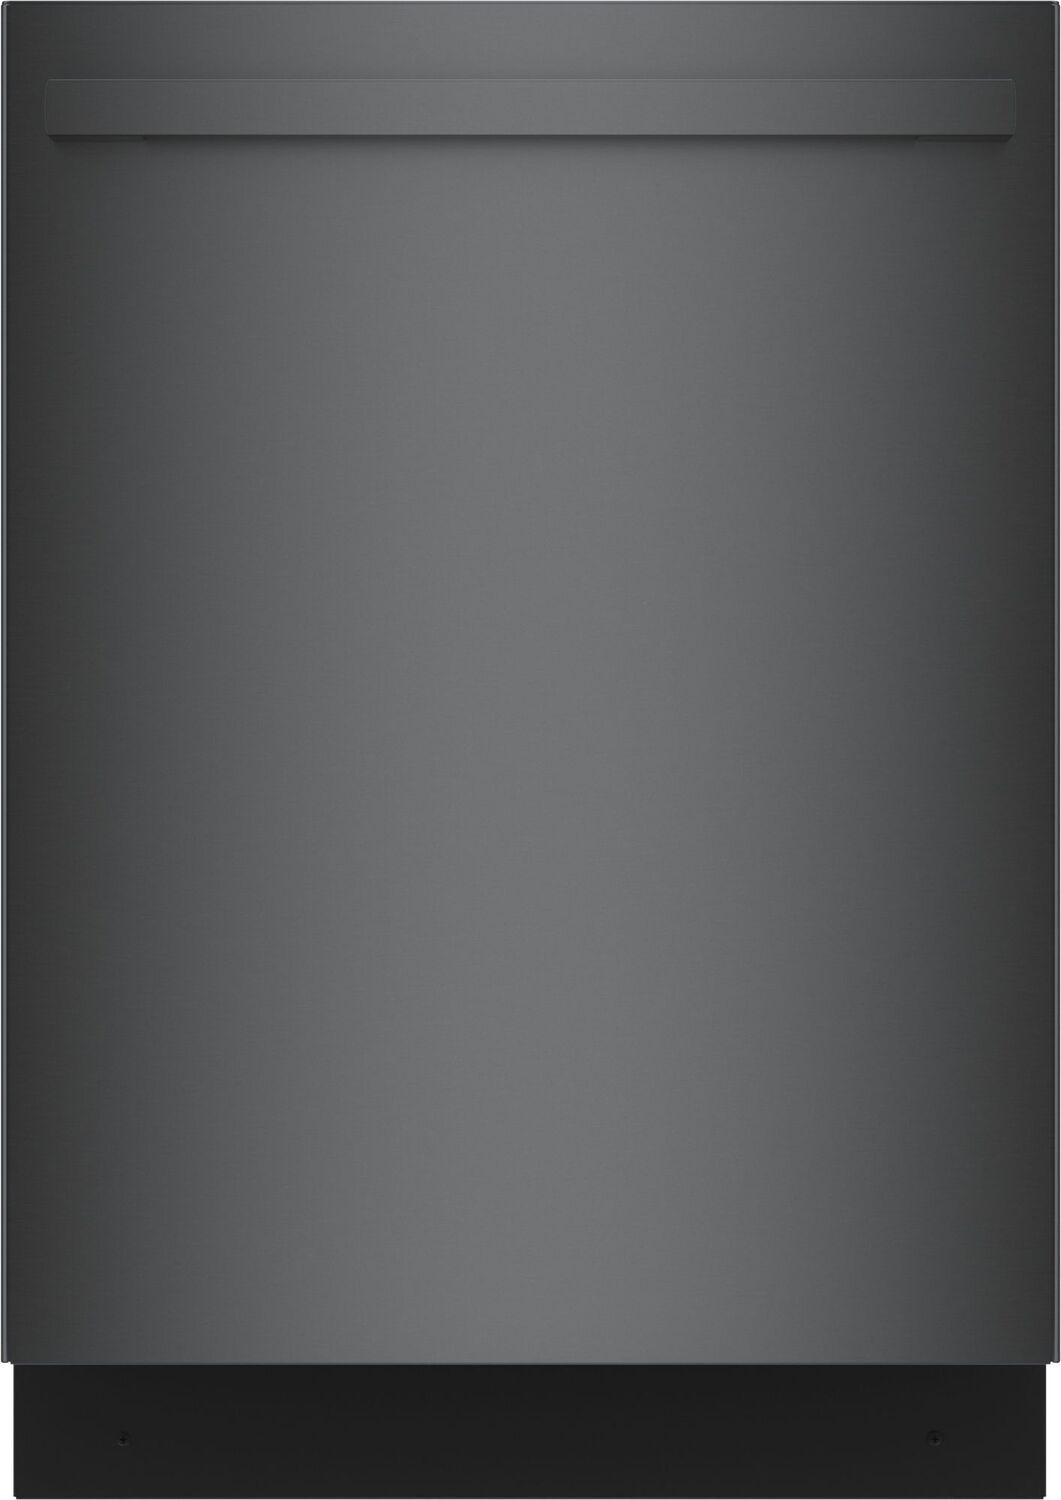 Bosch SHX78CM4N 800 Series Dishwasher 24" Black Stainless Steel